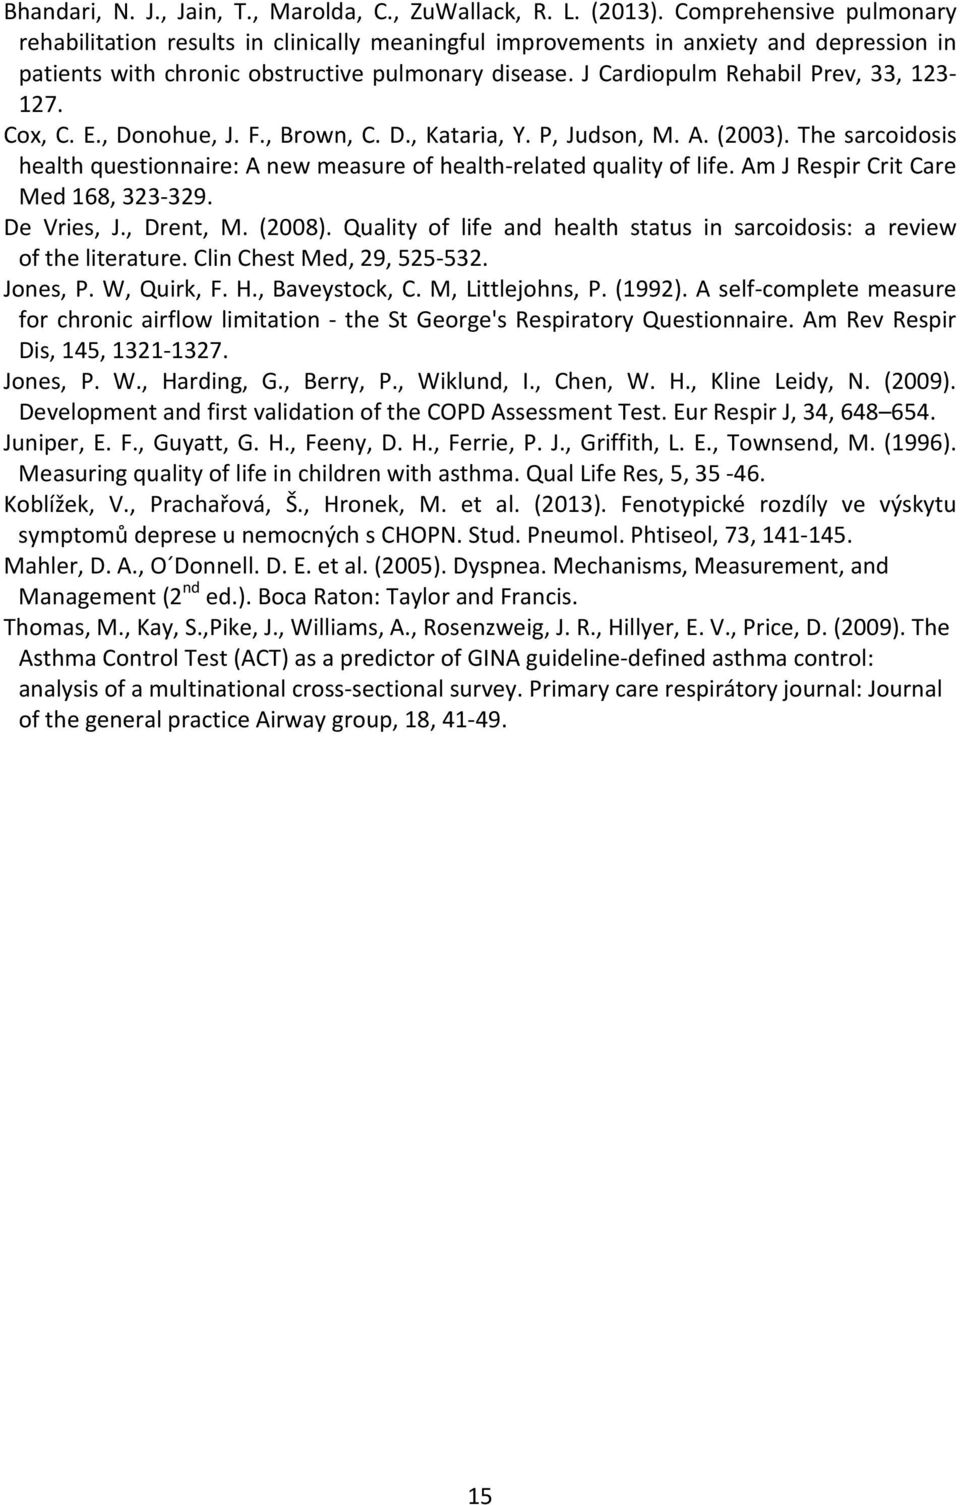 J Cardiopulm Rehabil Prev, 33, 123-127. Cox, C. E., Donohue, J. F., Brown, C. D., Kataria, Y. P, Judson, M. A. (2003).